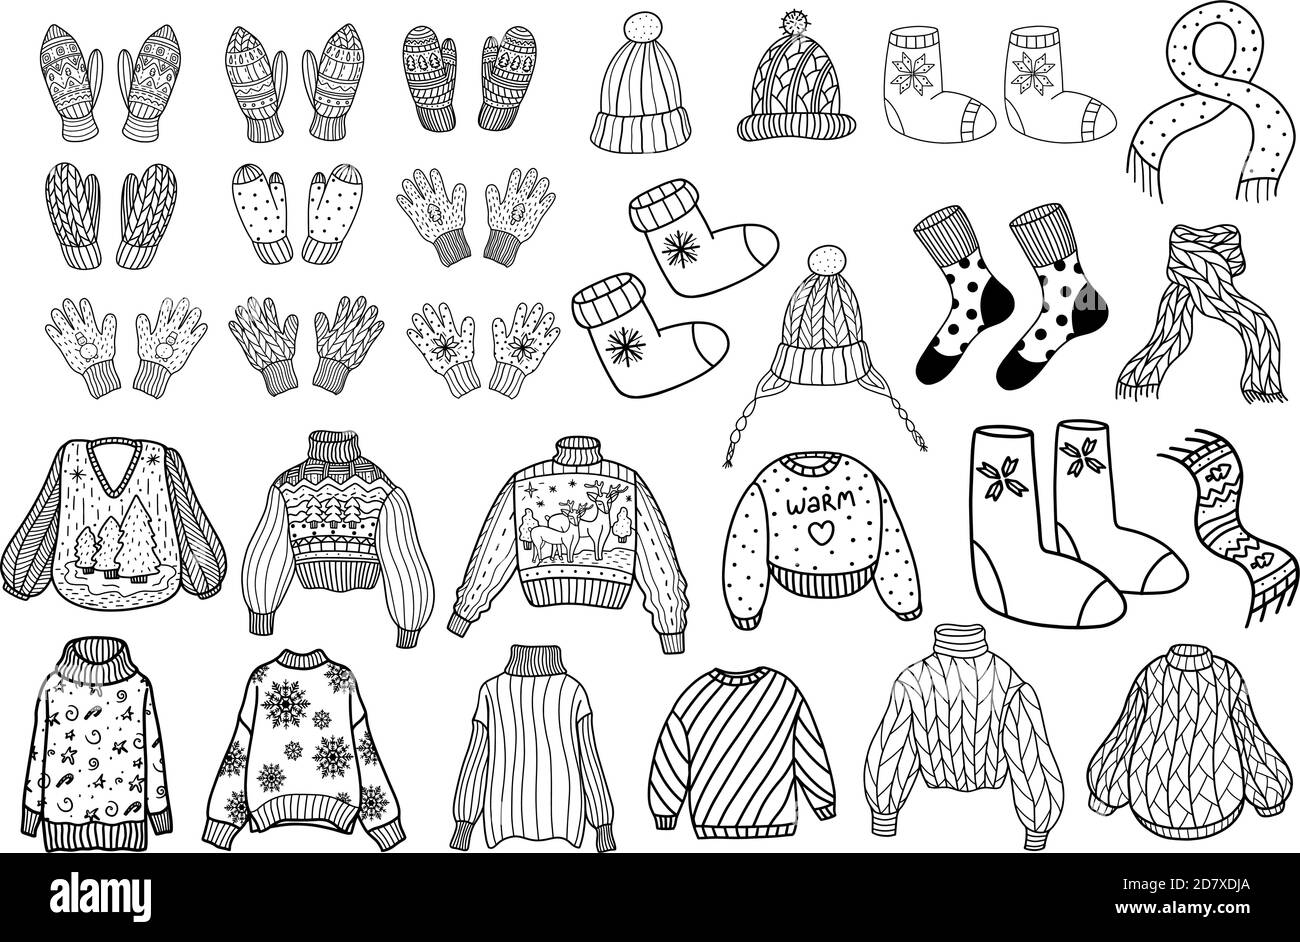 Collezione di abbigliamento invernale a maglia. Clothig invernale in lana lavorato a maglia. Illustrazione vettoriale in stile Doodle Illustrazione Vettoriale